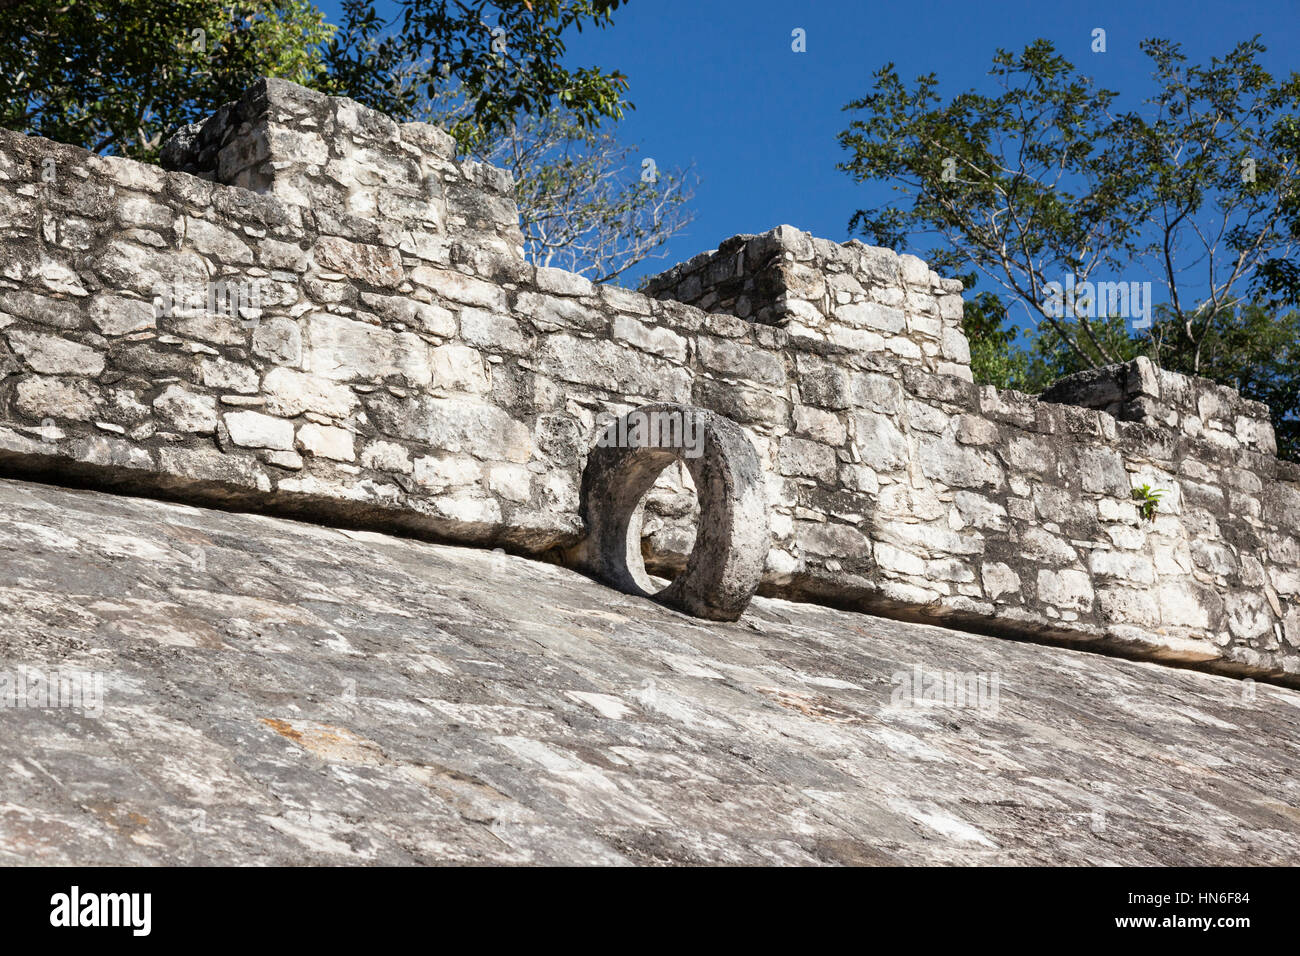 Ball court at Coba Mayan ruins. Ancient Mayan civilization, Yucatan Peninsula, Mexican state of Quintana Roo, Mexico Stock Photo